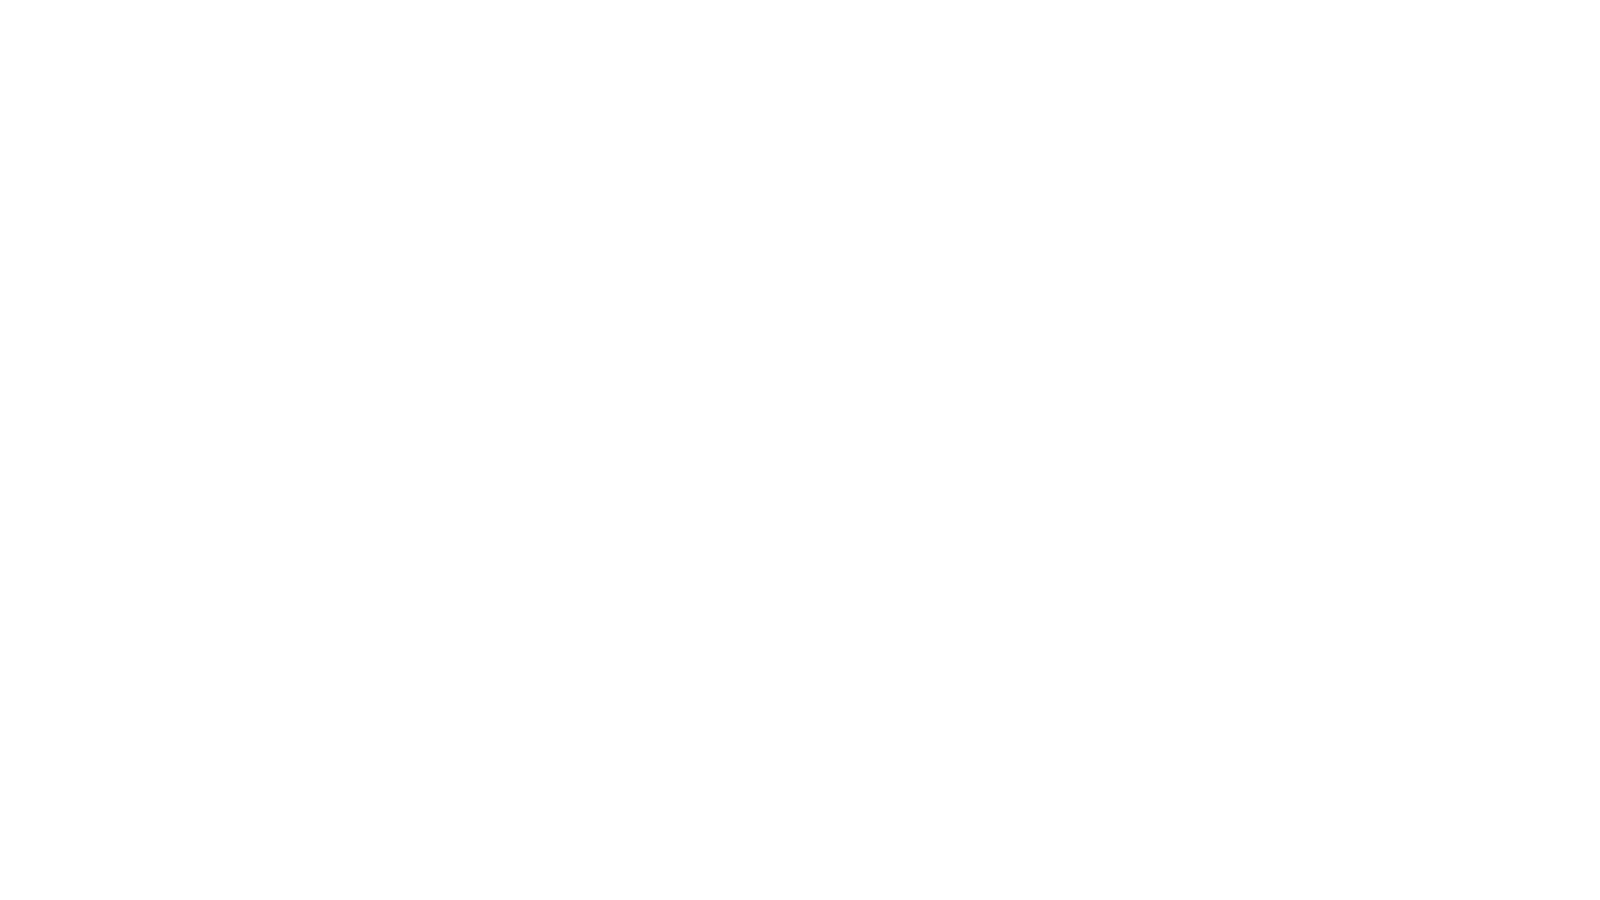 איור כיסא המשחקים המגלם את מפרטי הגובה והרוחב על רקע שחור